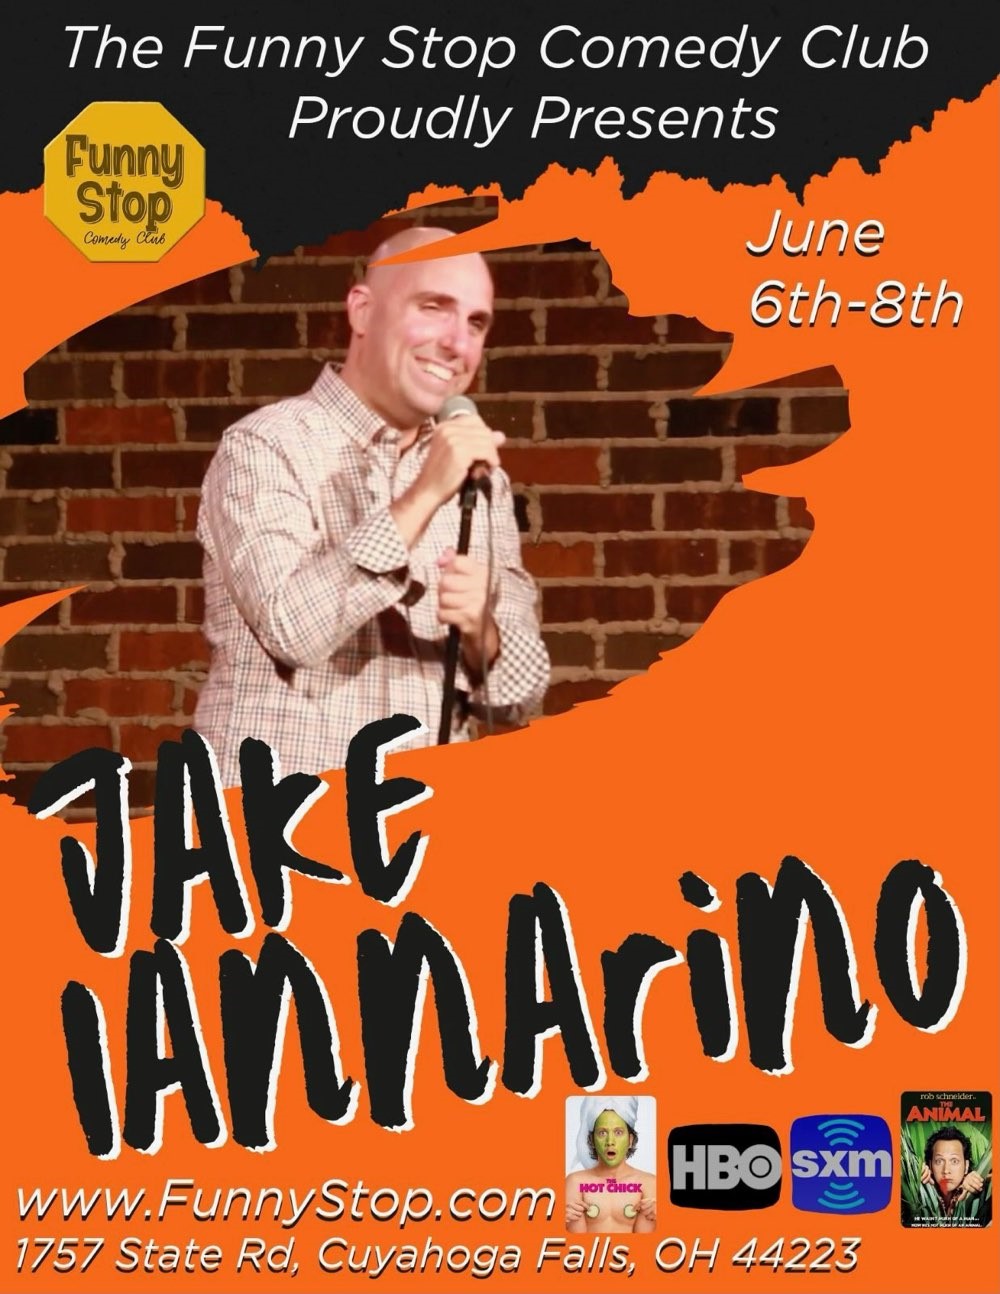 Jake Iannarino - Fri. 7:30PM Show Funny Stop Comedy Club on jun. 07, 19:30@Funny Stop Comedy Club - Compra entradas y obtén información enFunny Stop funnystop.online